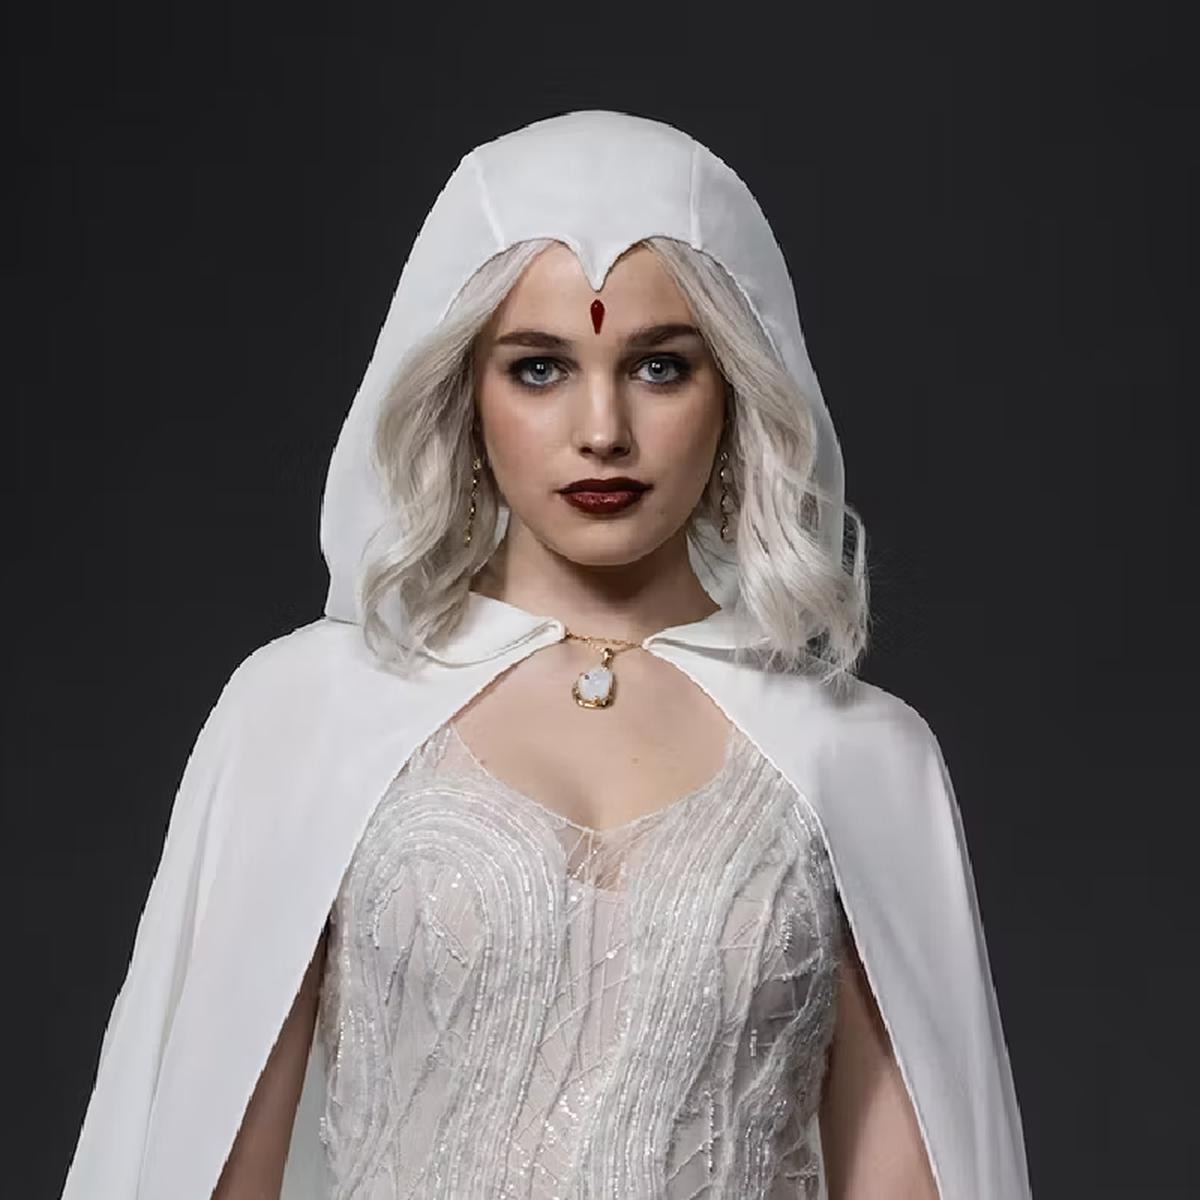 Raven aparece con su traje blanco para la temporada 3 de Titans